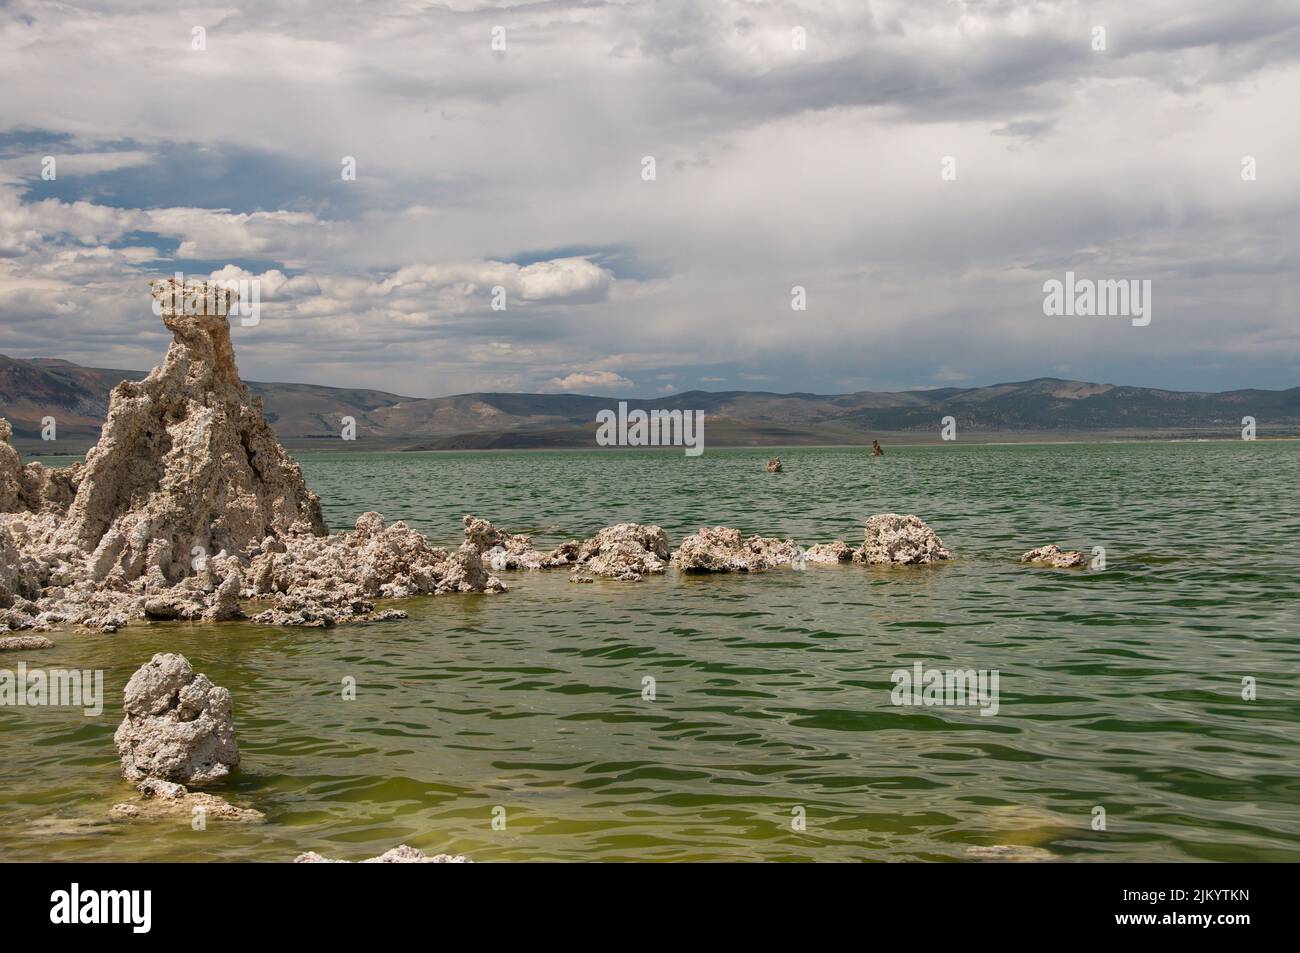 A scenic view of rock structure in Mono Lake, a saline soda lake in Mono County, California Stock Photo